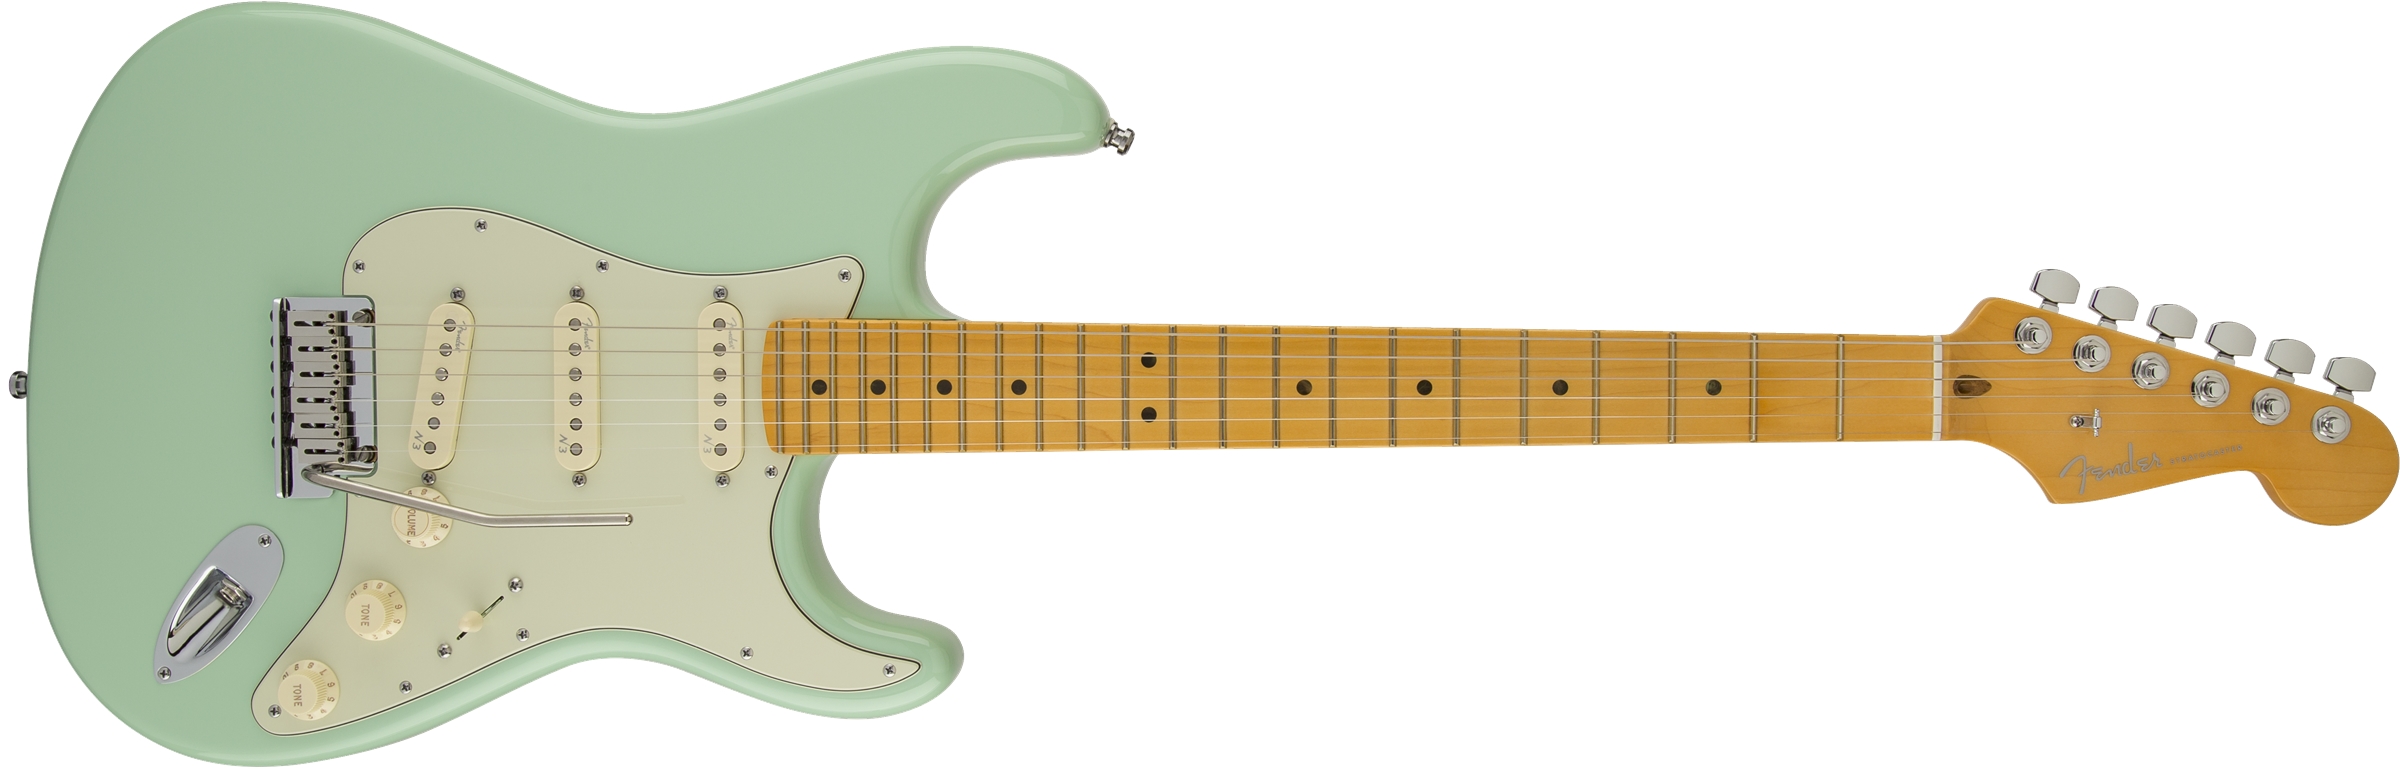 American Deluxe Stratocaster V Neck [2010-2015] Fender - Audiofanzine